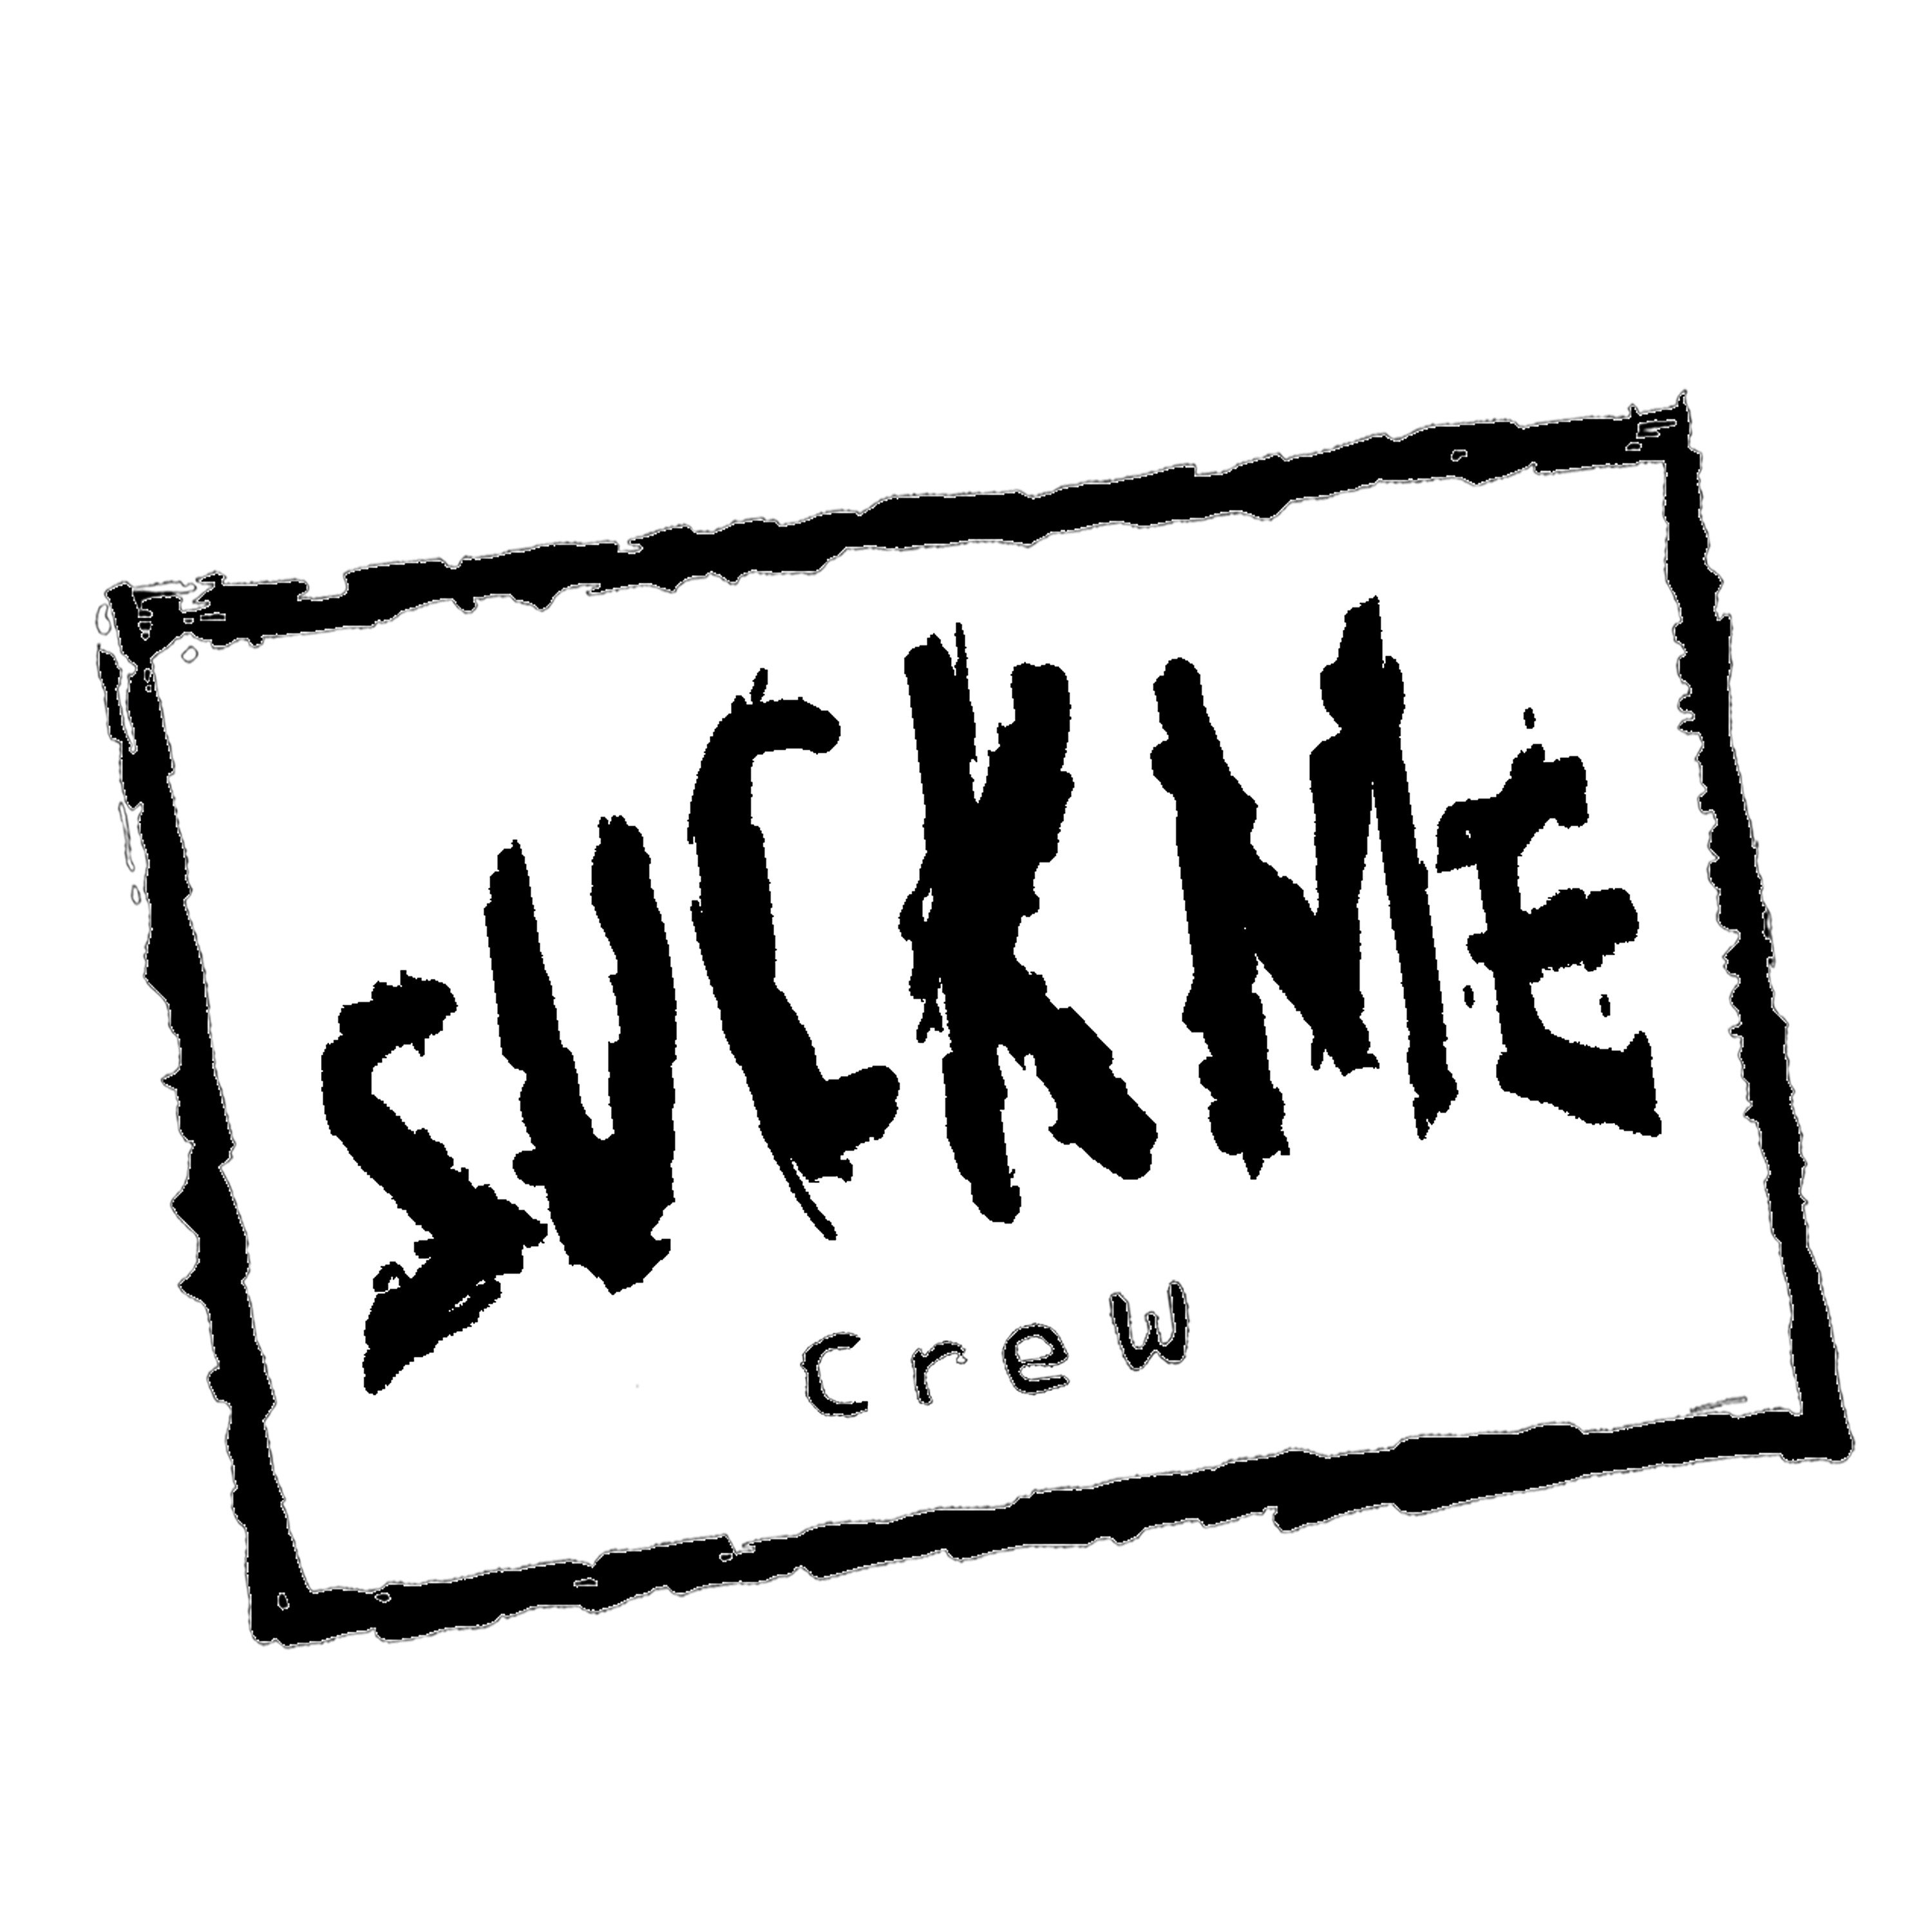 the Suck Me Crew